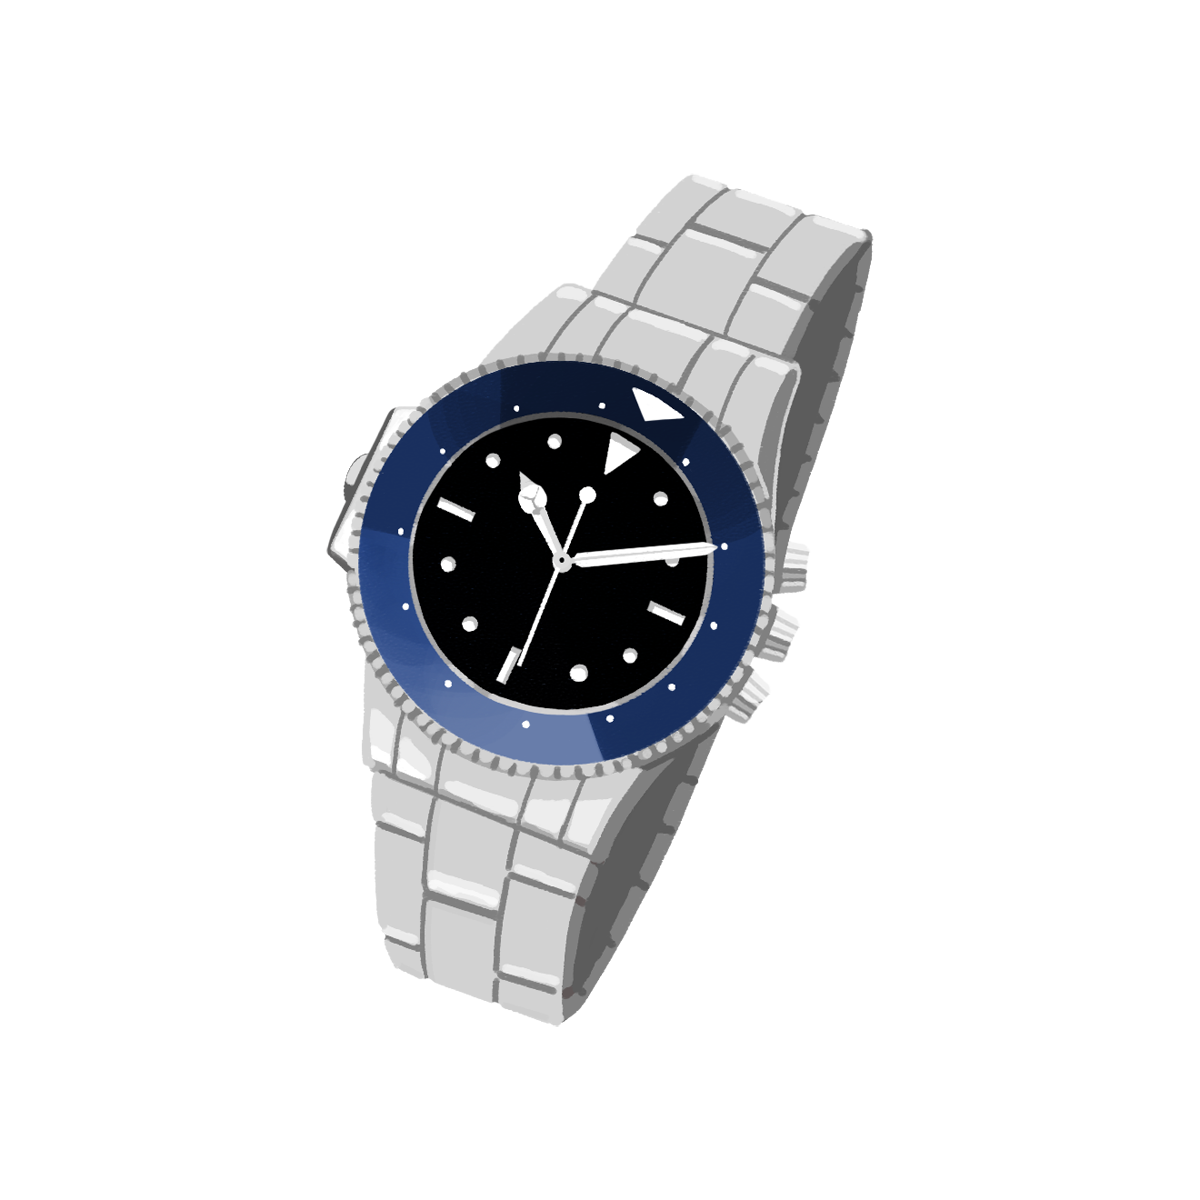 ブランド物の腕時計のイラスト エコのモト